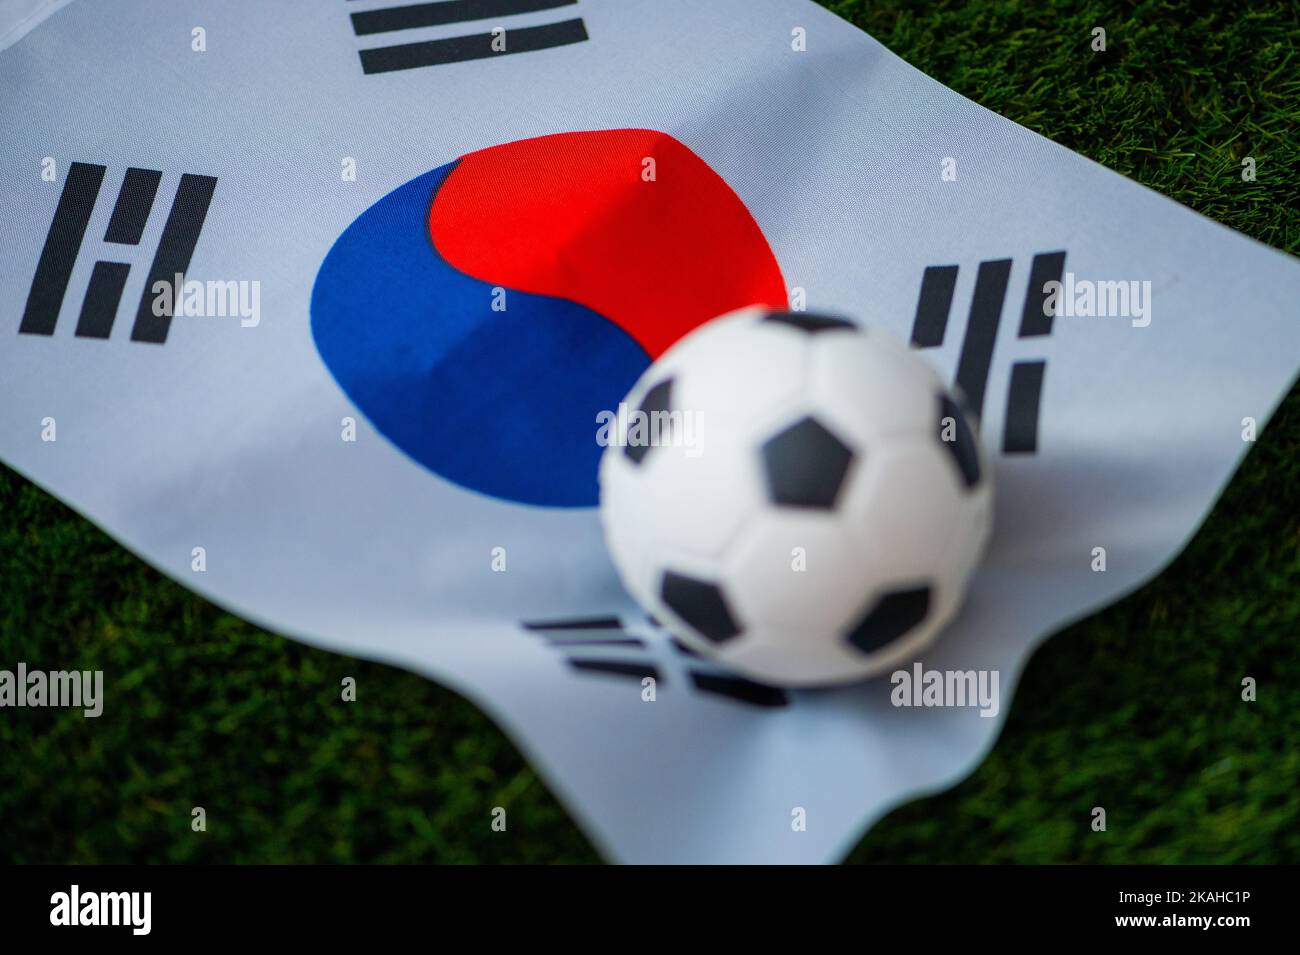 Équipe nationale de football de Corée du Sud. Drapeau national sur l'herbe verte et le ballon de football. Papier peint pour le championnat et le tournoi de football en 2022. Monde entier Banque D'Images